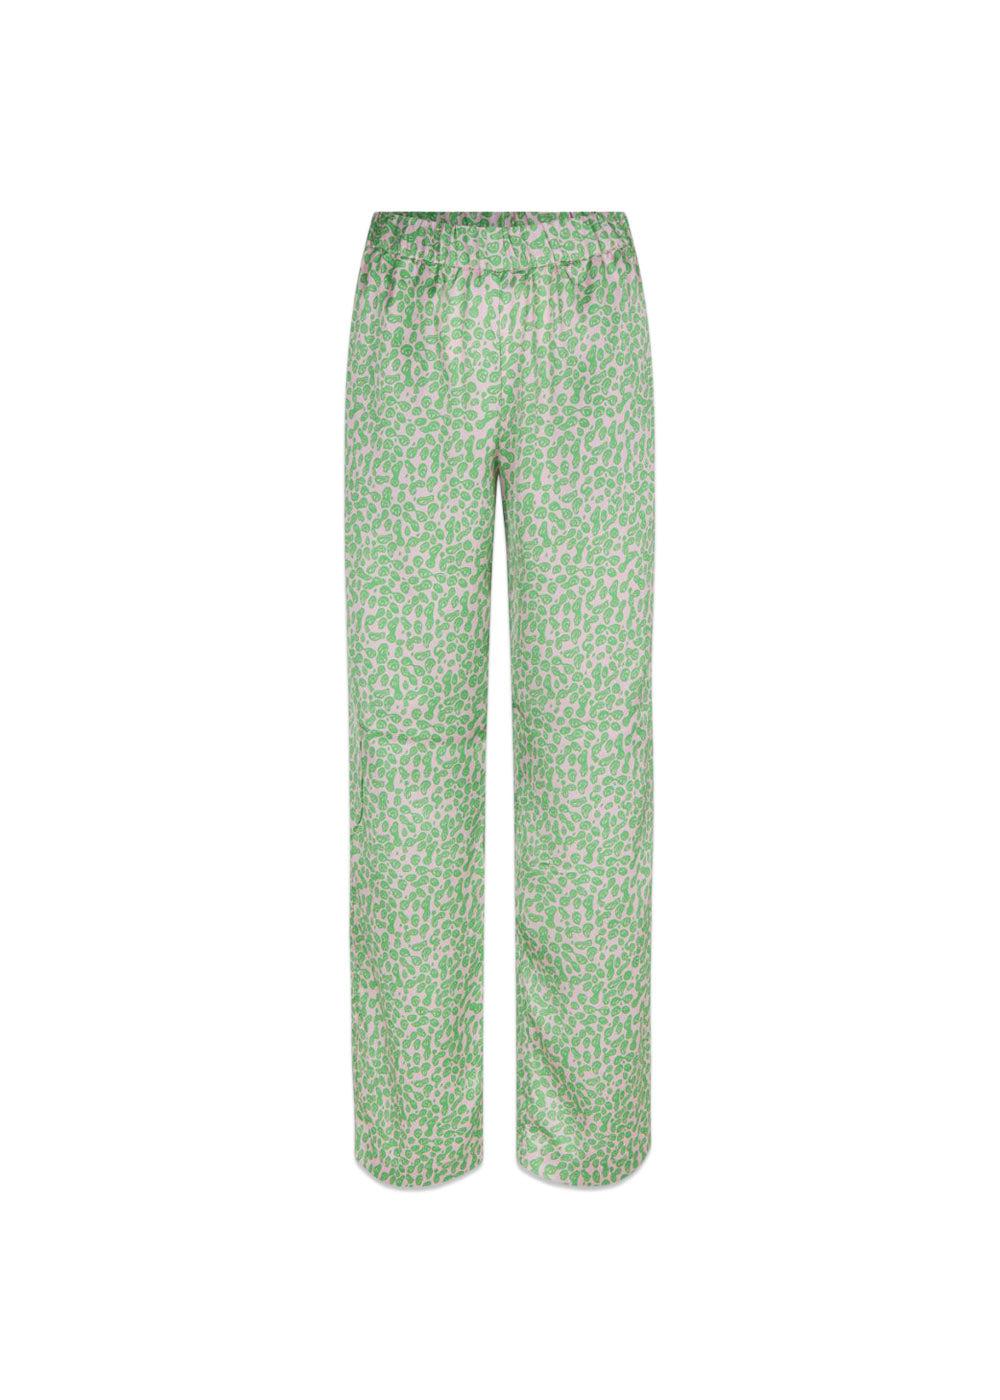 Modströms ClarkeMD print pants - Classic Green Smiley. Køb bukser her.